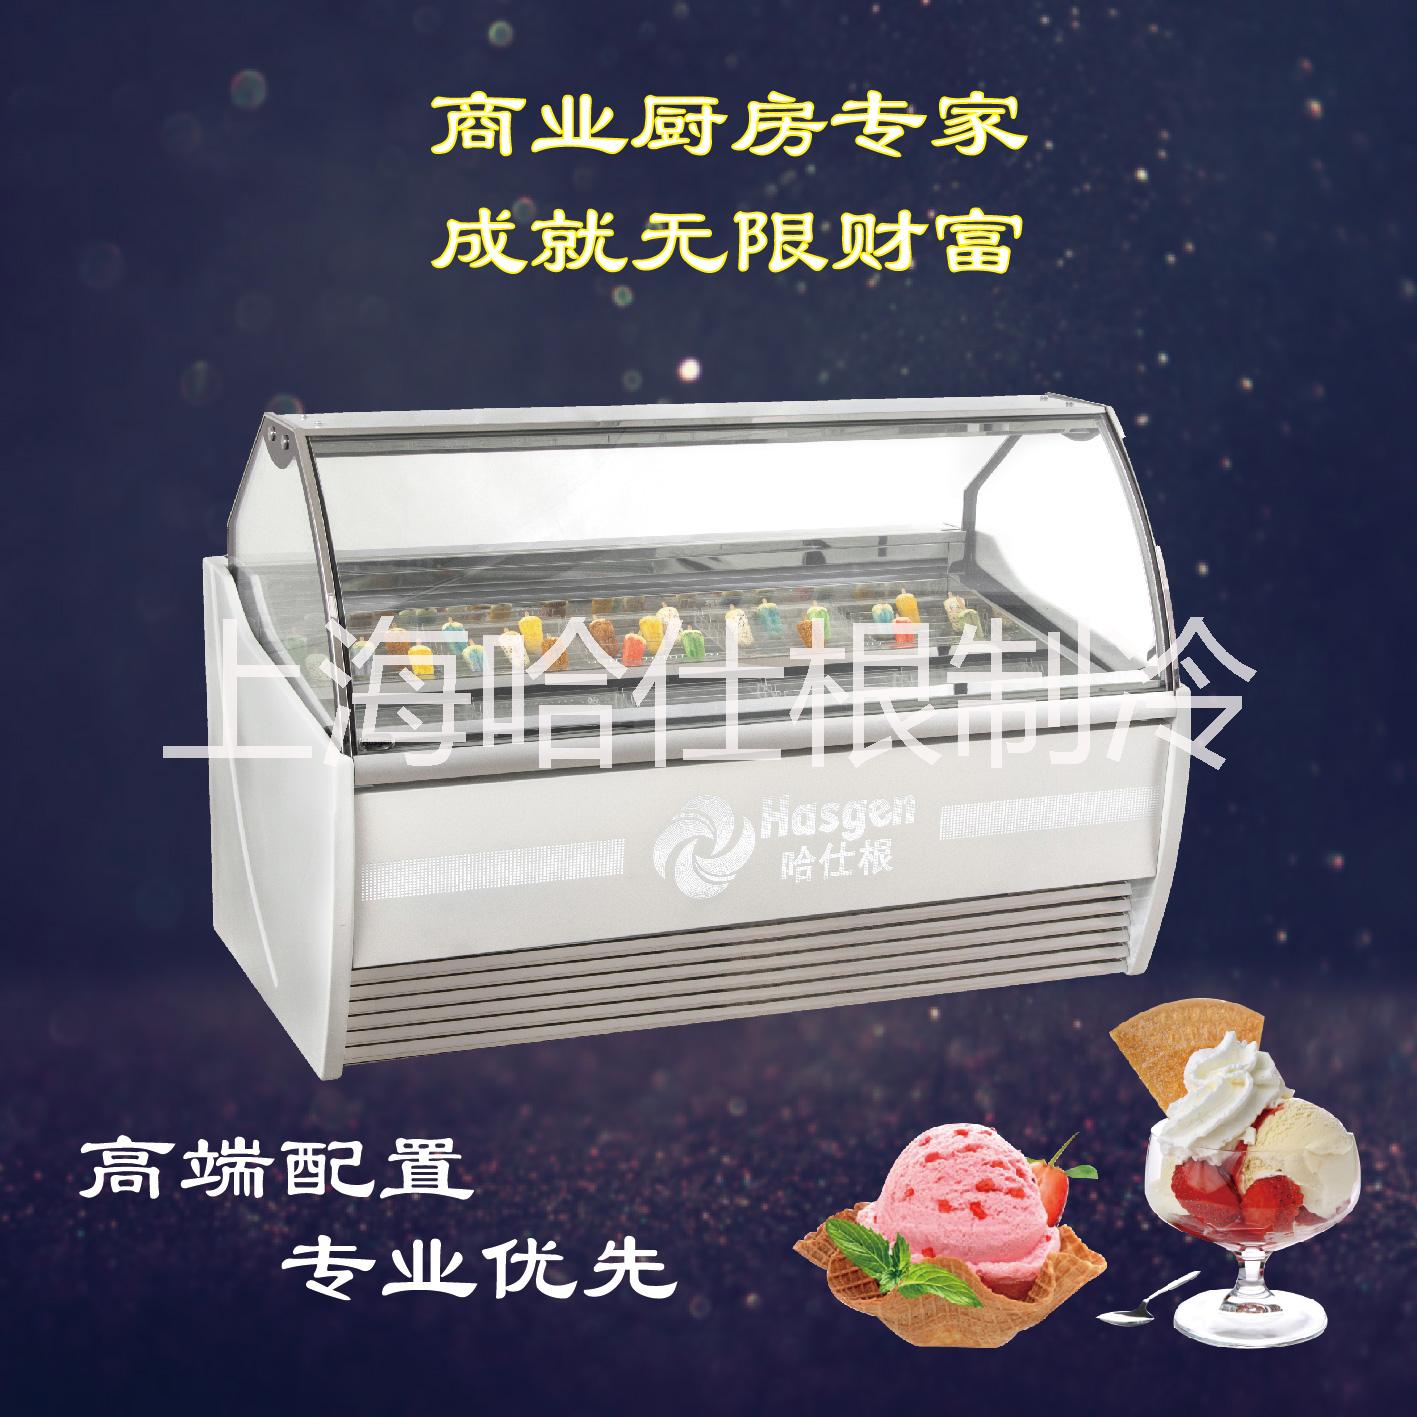 上海市1.6米哈根达斯冰淇淋展示柜厂家